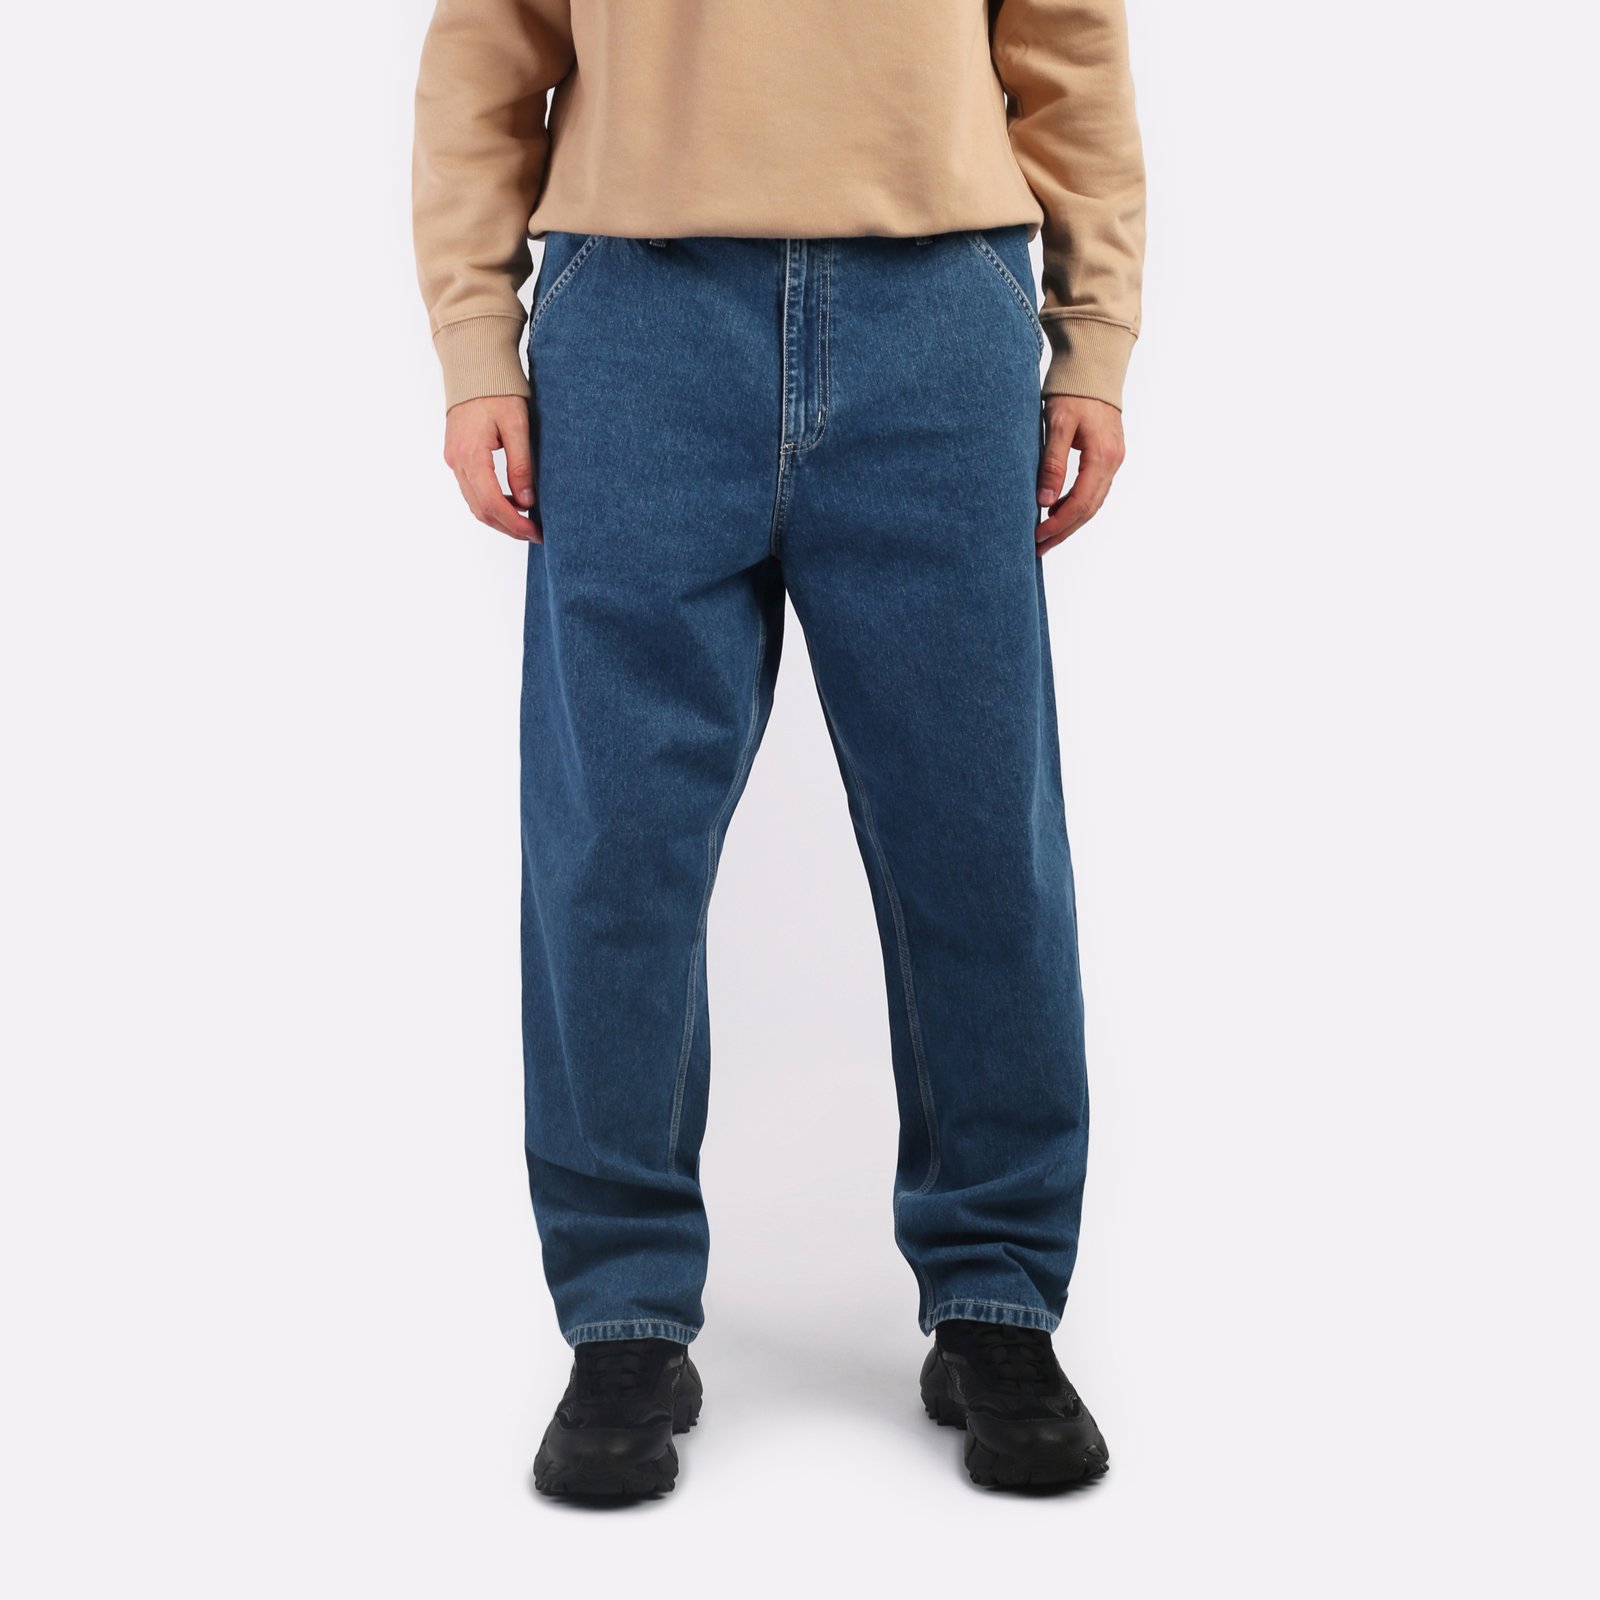 мужские джинсы Carhartt WIP Simple Pant  (I022947-blue)  - цена, описание, фото 1